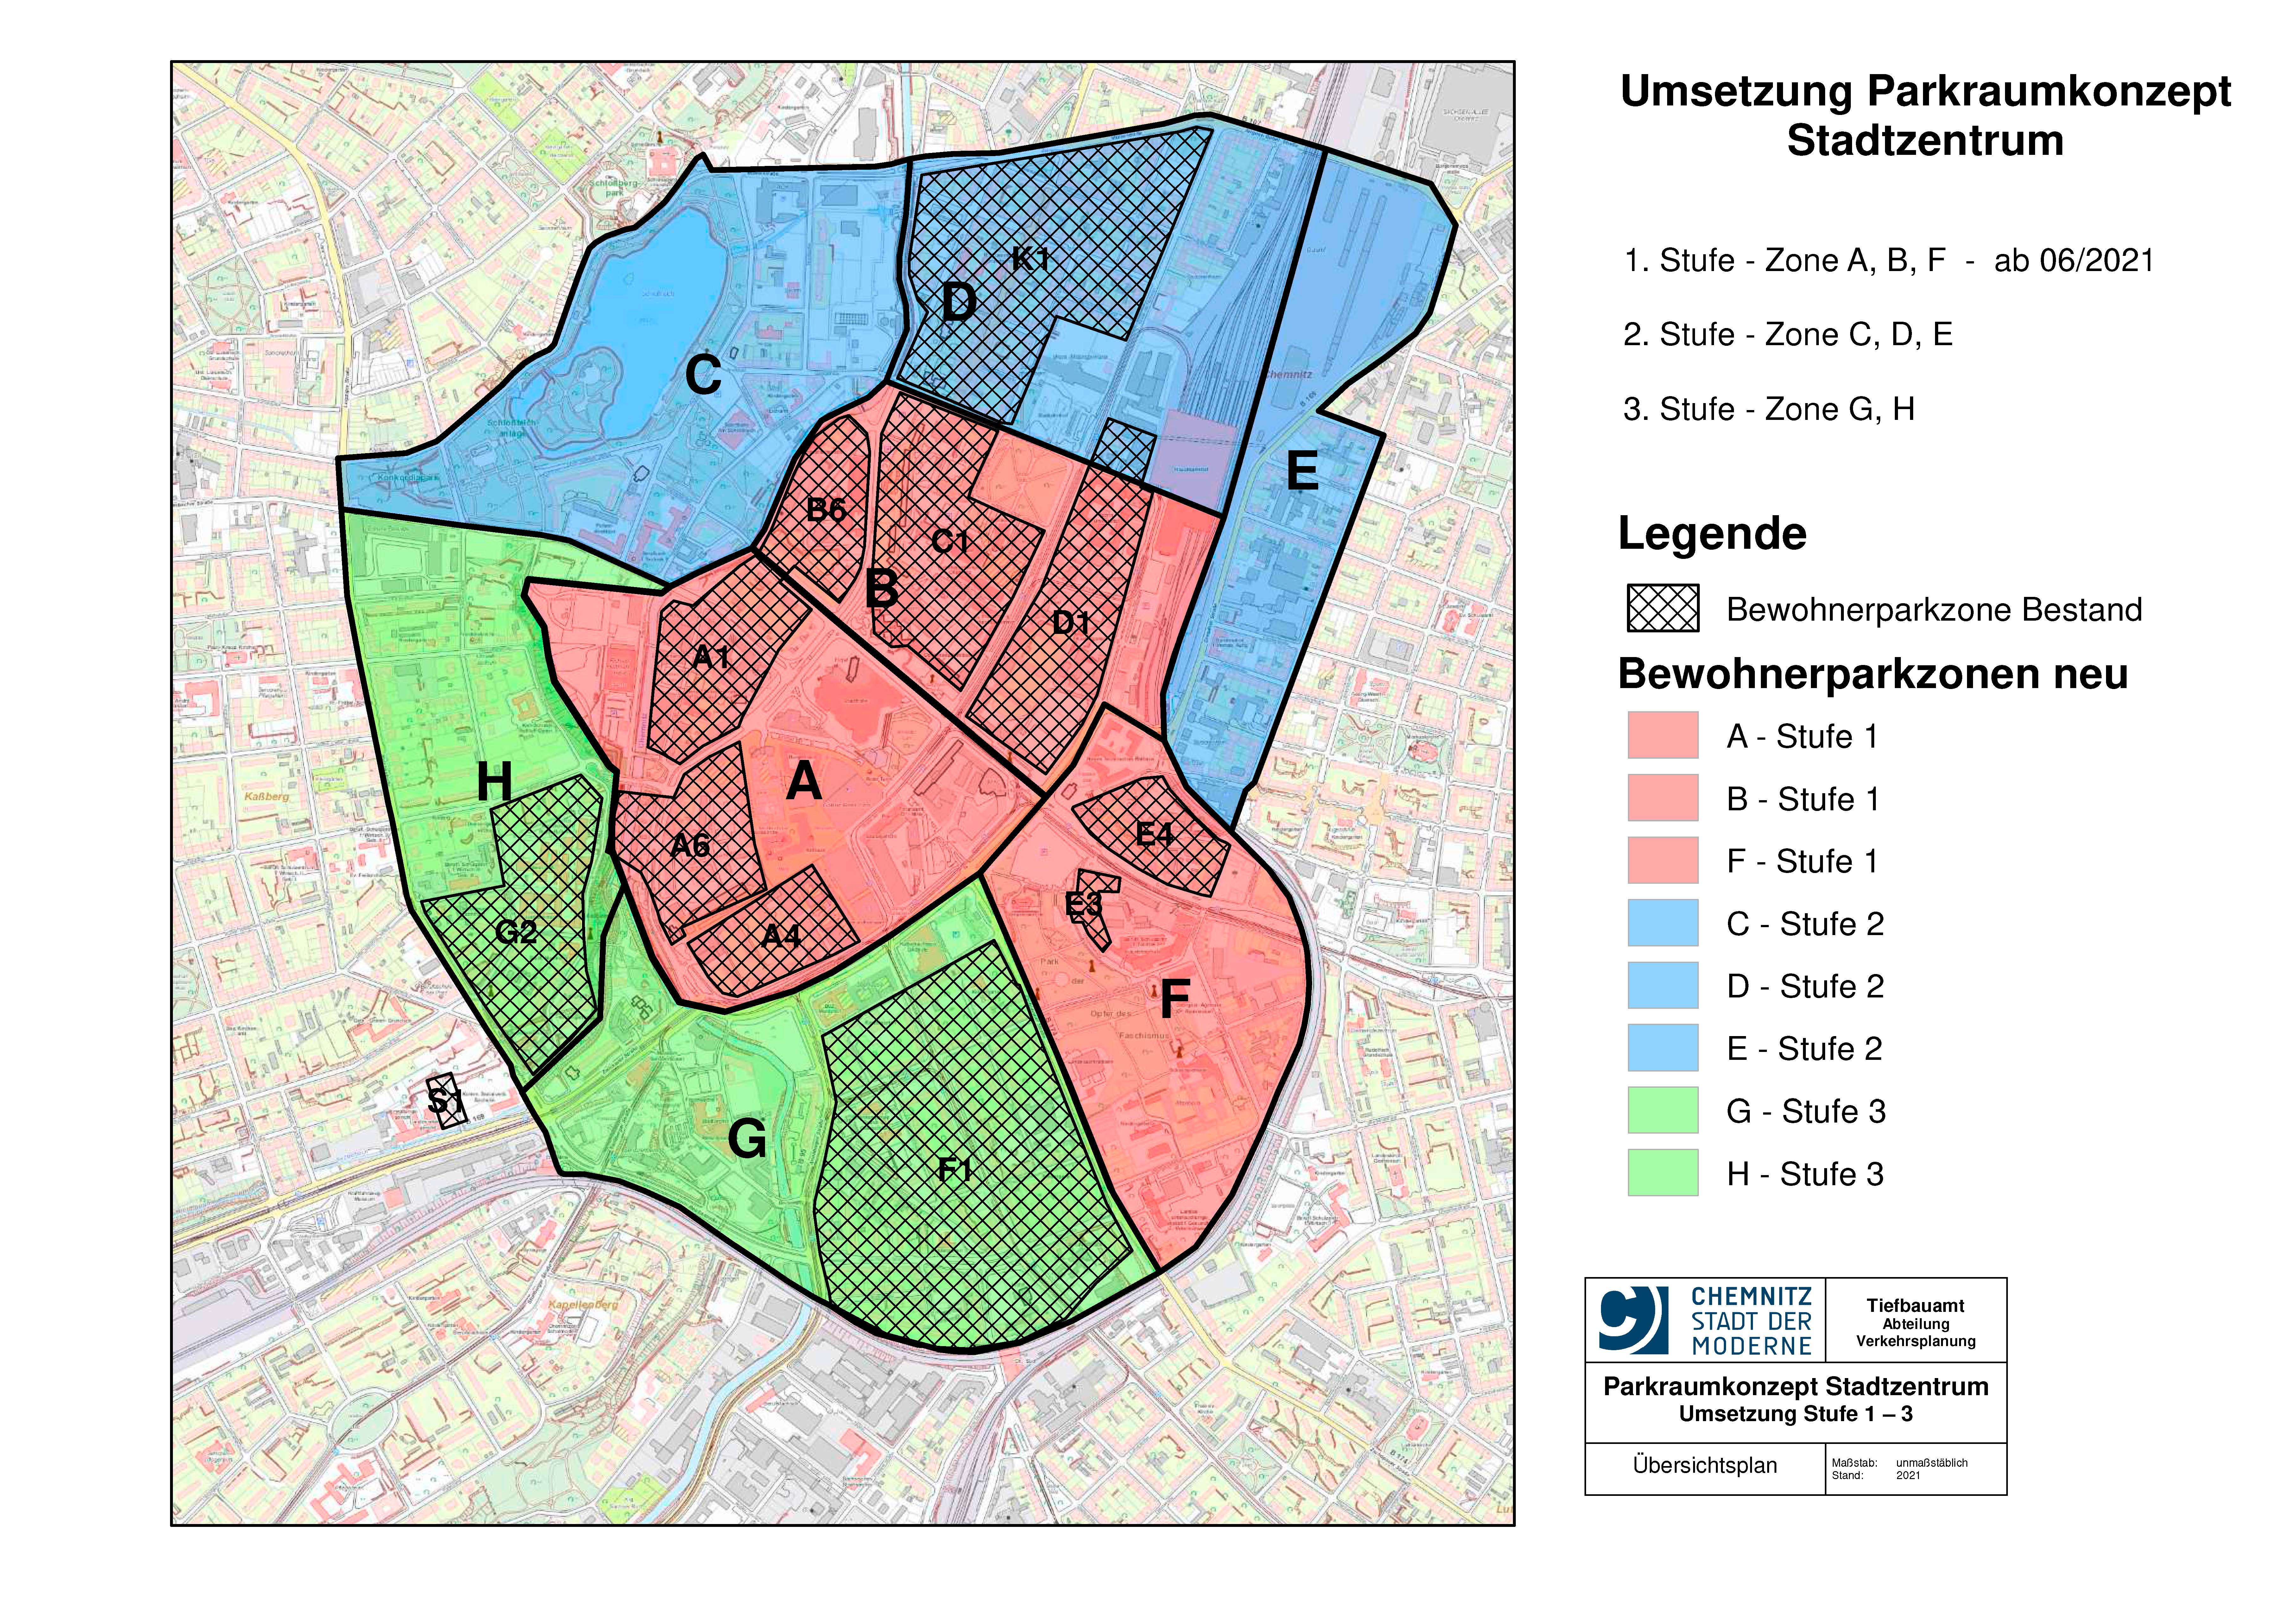 Lageplan zum Parkraumkonzept Stadtzentrum